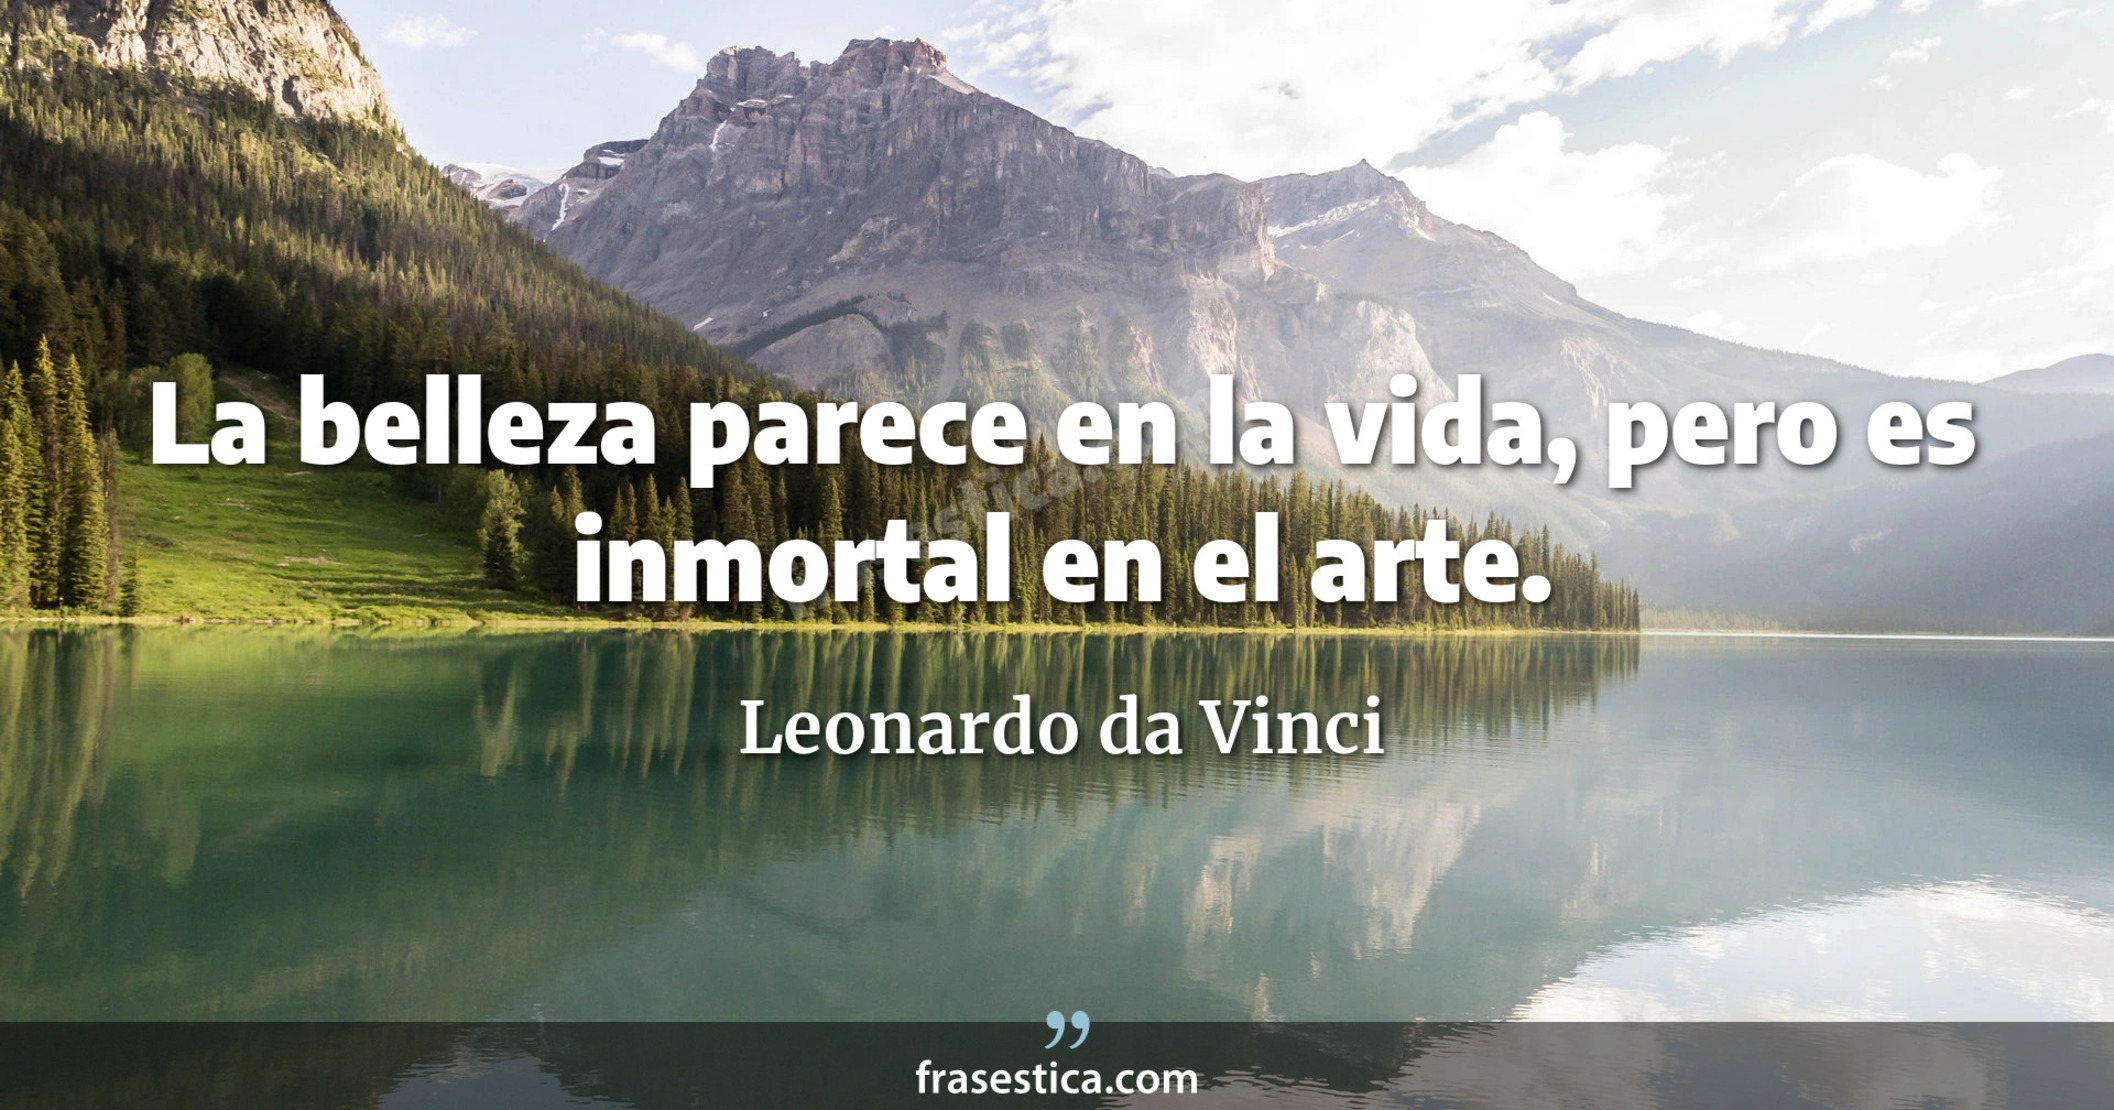 La belleza parece en la vida, pero es inmortal en el arte. - Leonardo da Vinci